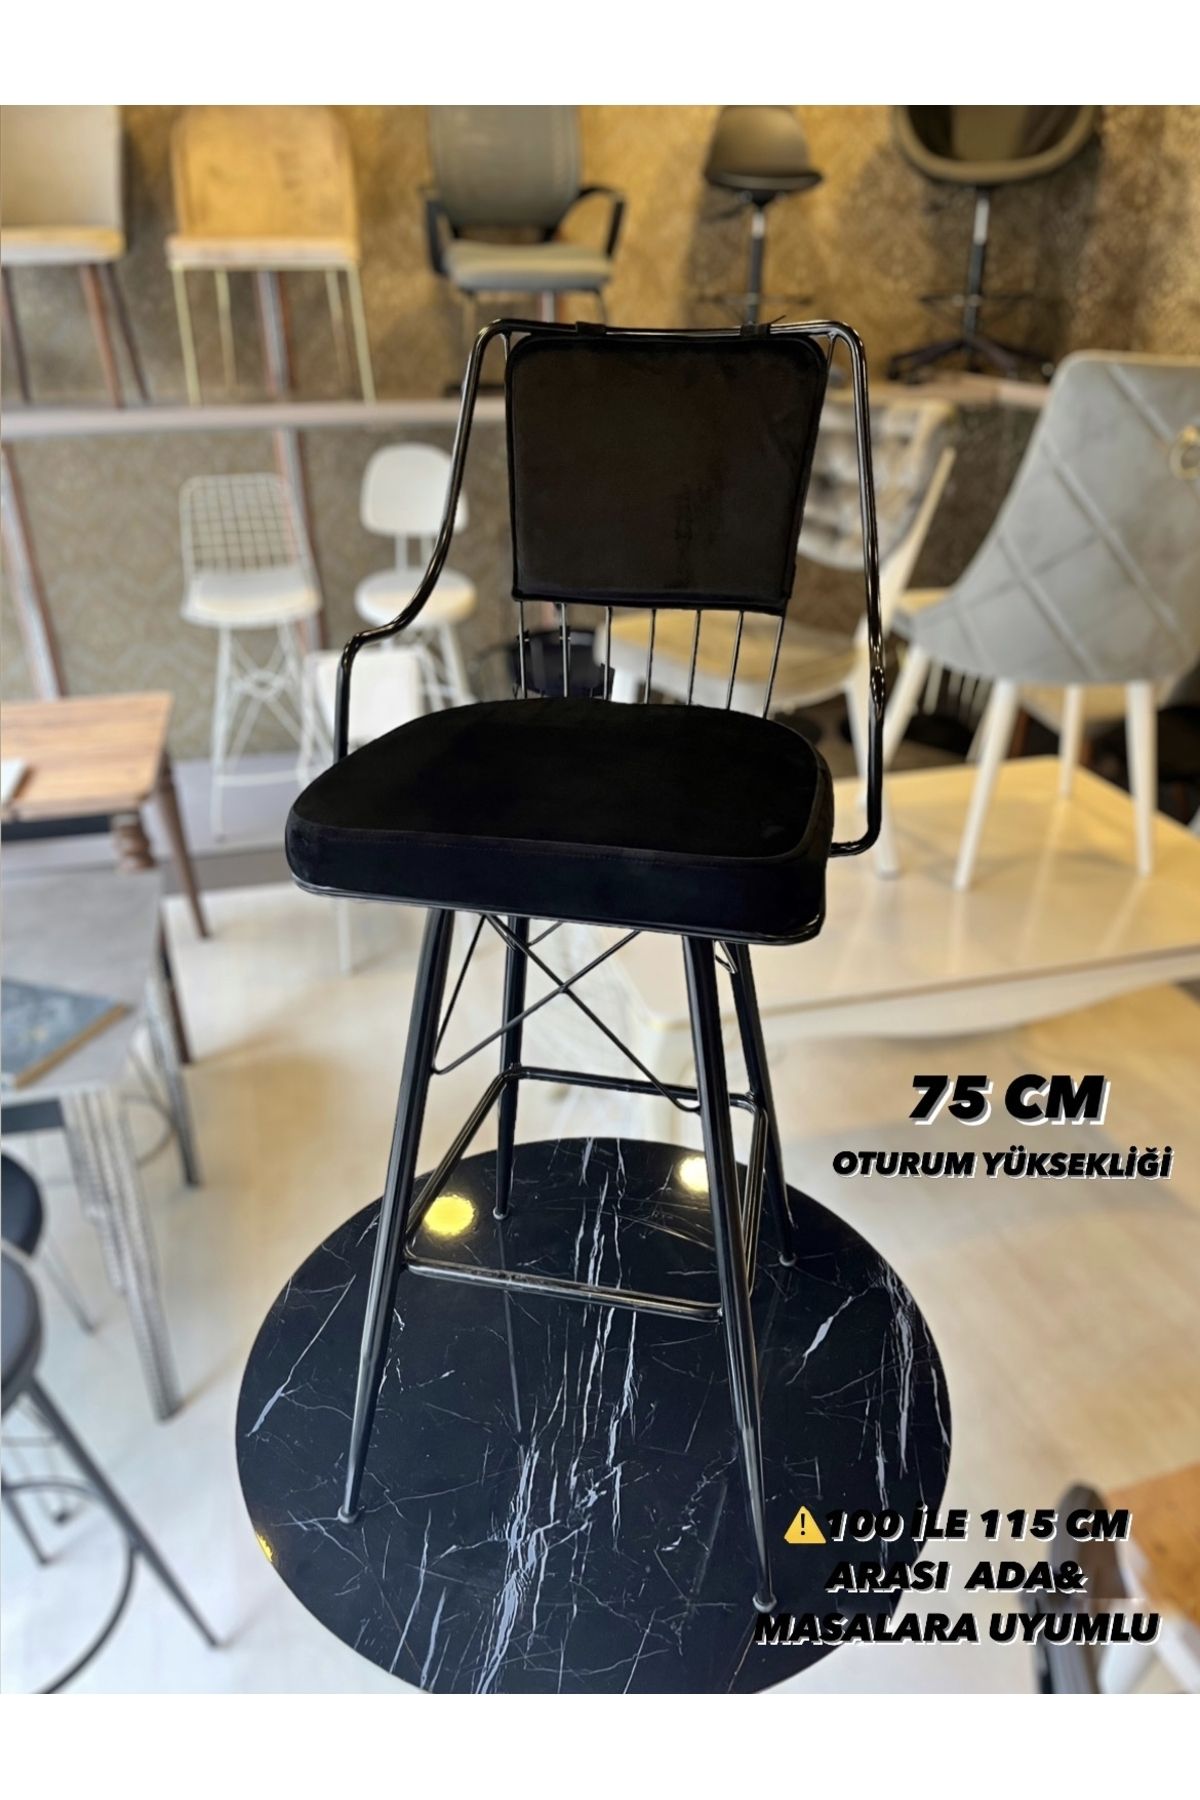 Sandalye Shop Yeni Reina Bar Sandalyesi Babyface Kumaş 75 cm Siyah.100 ile 115 cm arası Ada&Masalara uyumlu